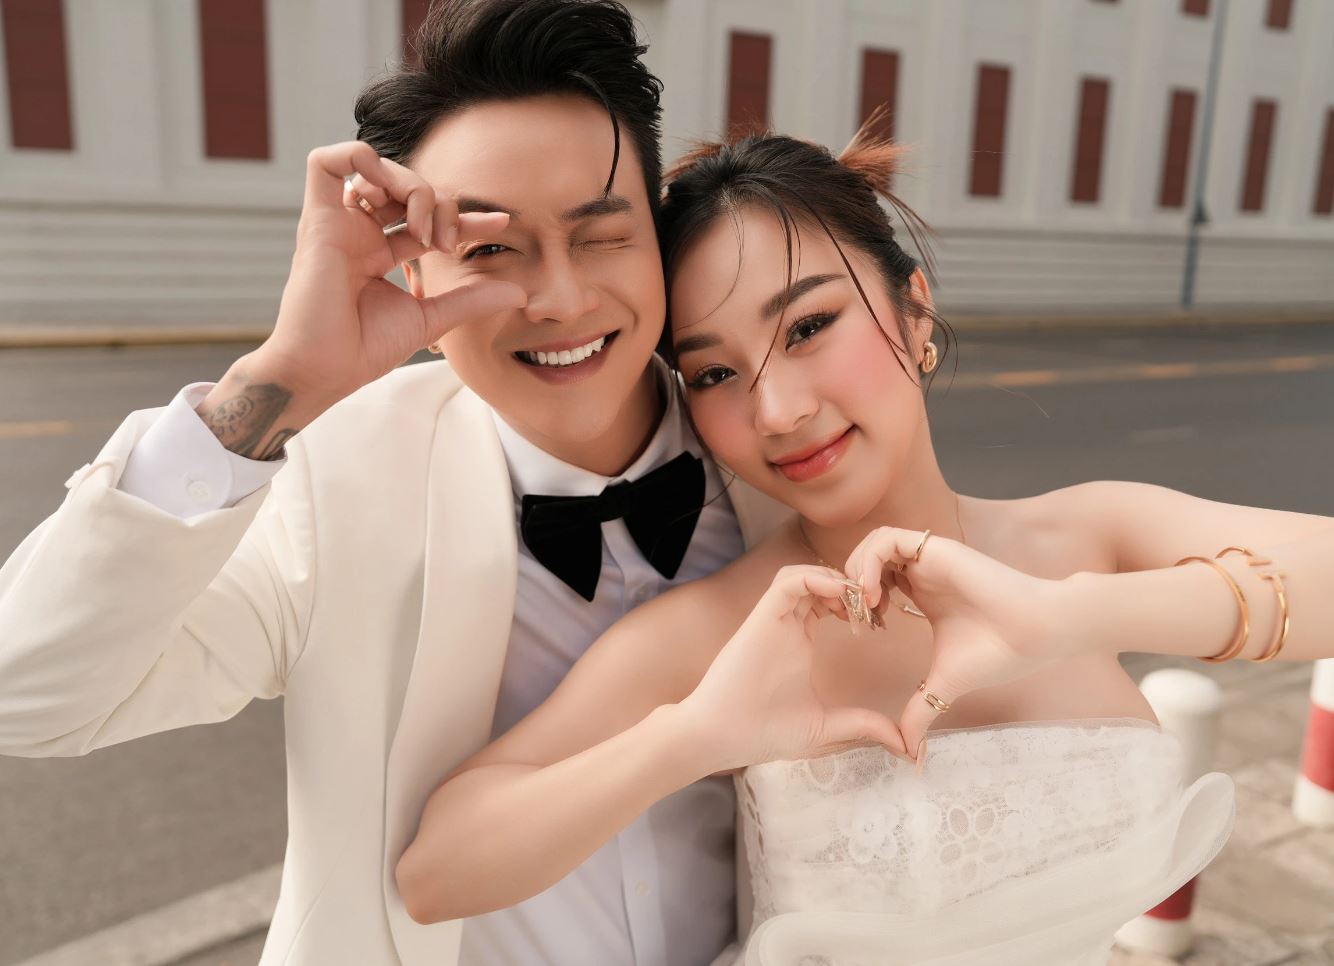 Nhật Kim Anh tự an ủi: 'Lạc quan giữa dòng đời' giữa lúc TiTi (HKT) thông báo lấy vợ - ảnh 1